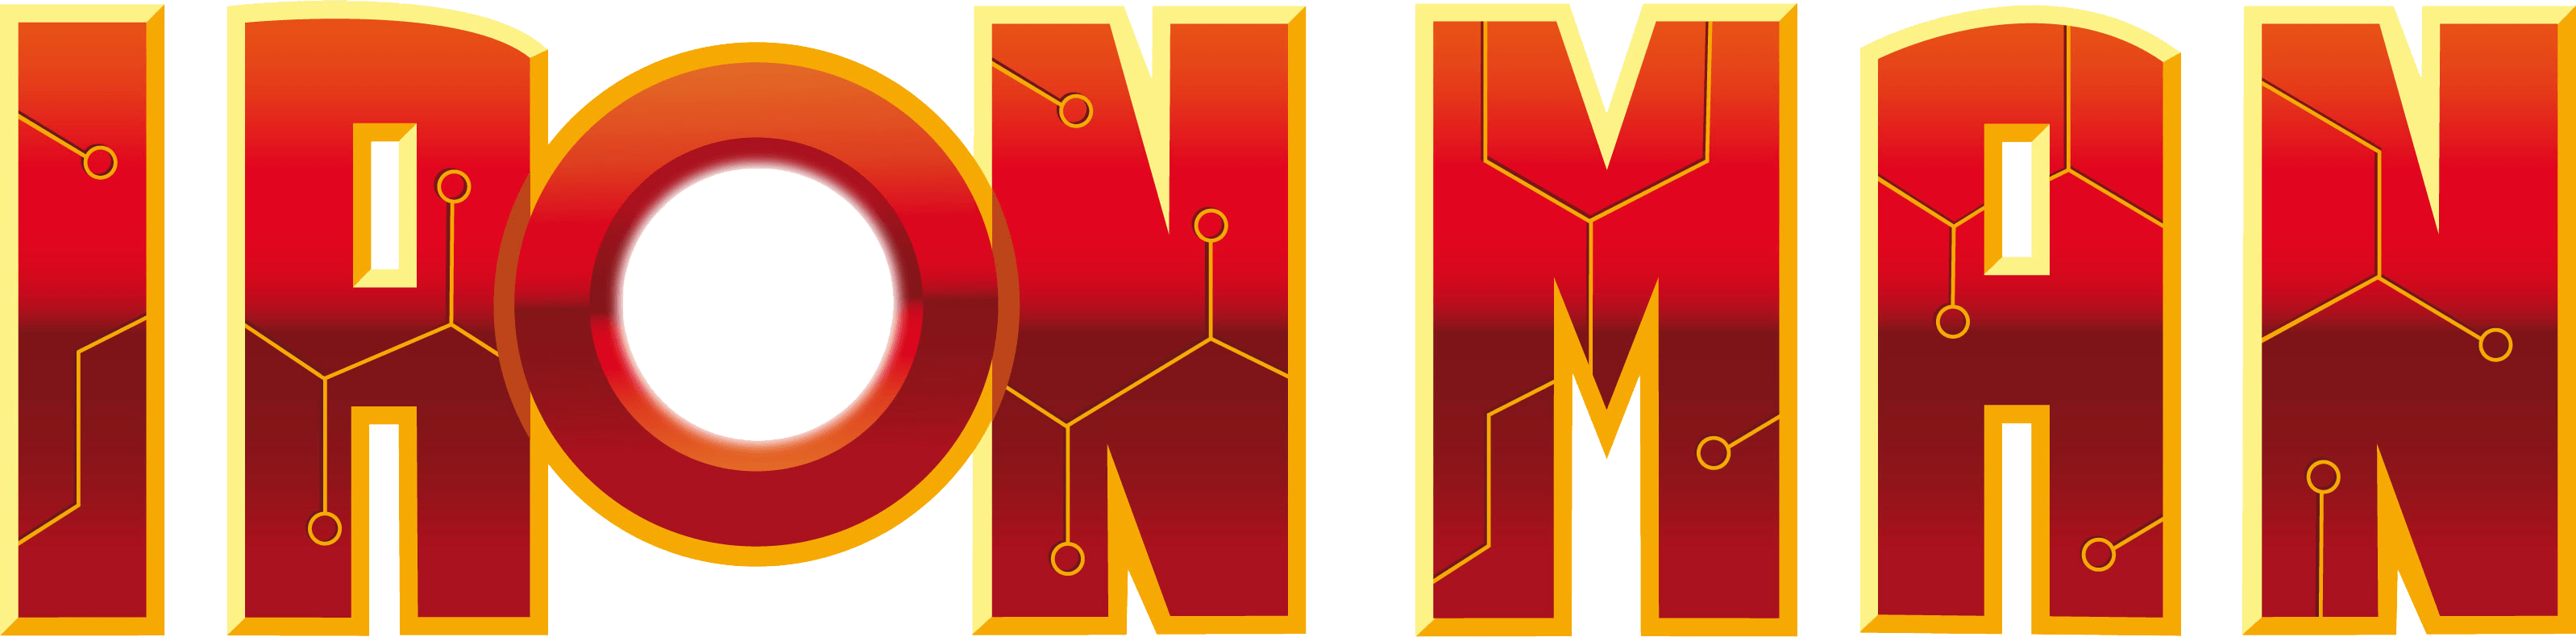 Iron Man 3 Logo - Ironman PNG image free download